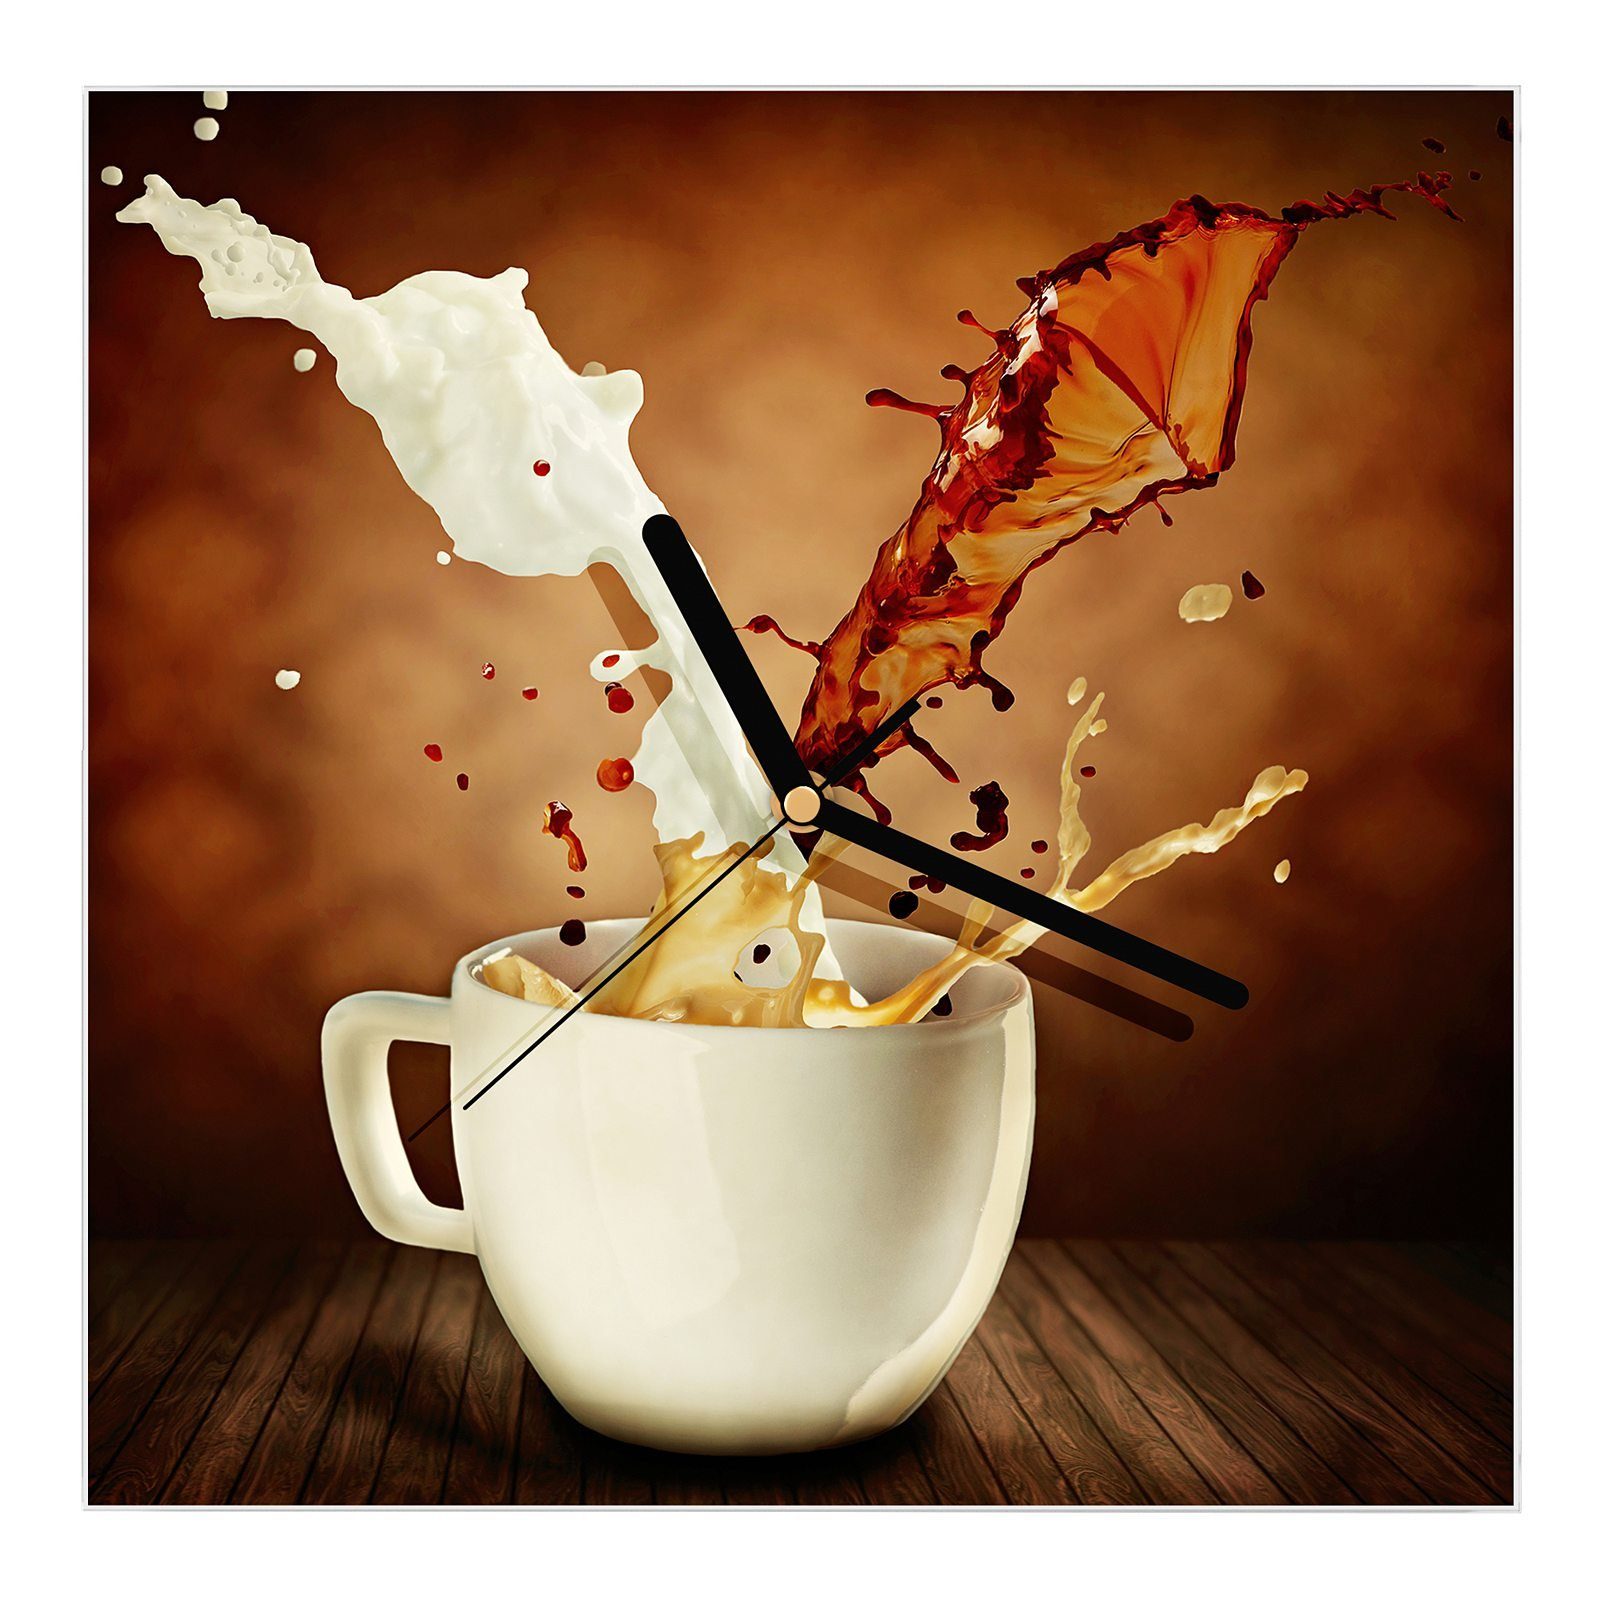 Primedeco Wanduhr Glasuhr Wanduhr Wandkunst Größe 30 x 30 cm mit Motiv Kaffee aus Tasse spritzend